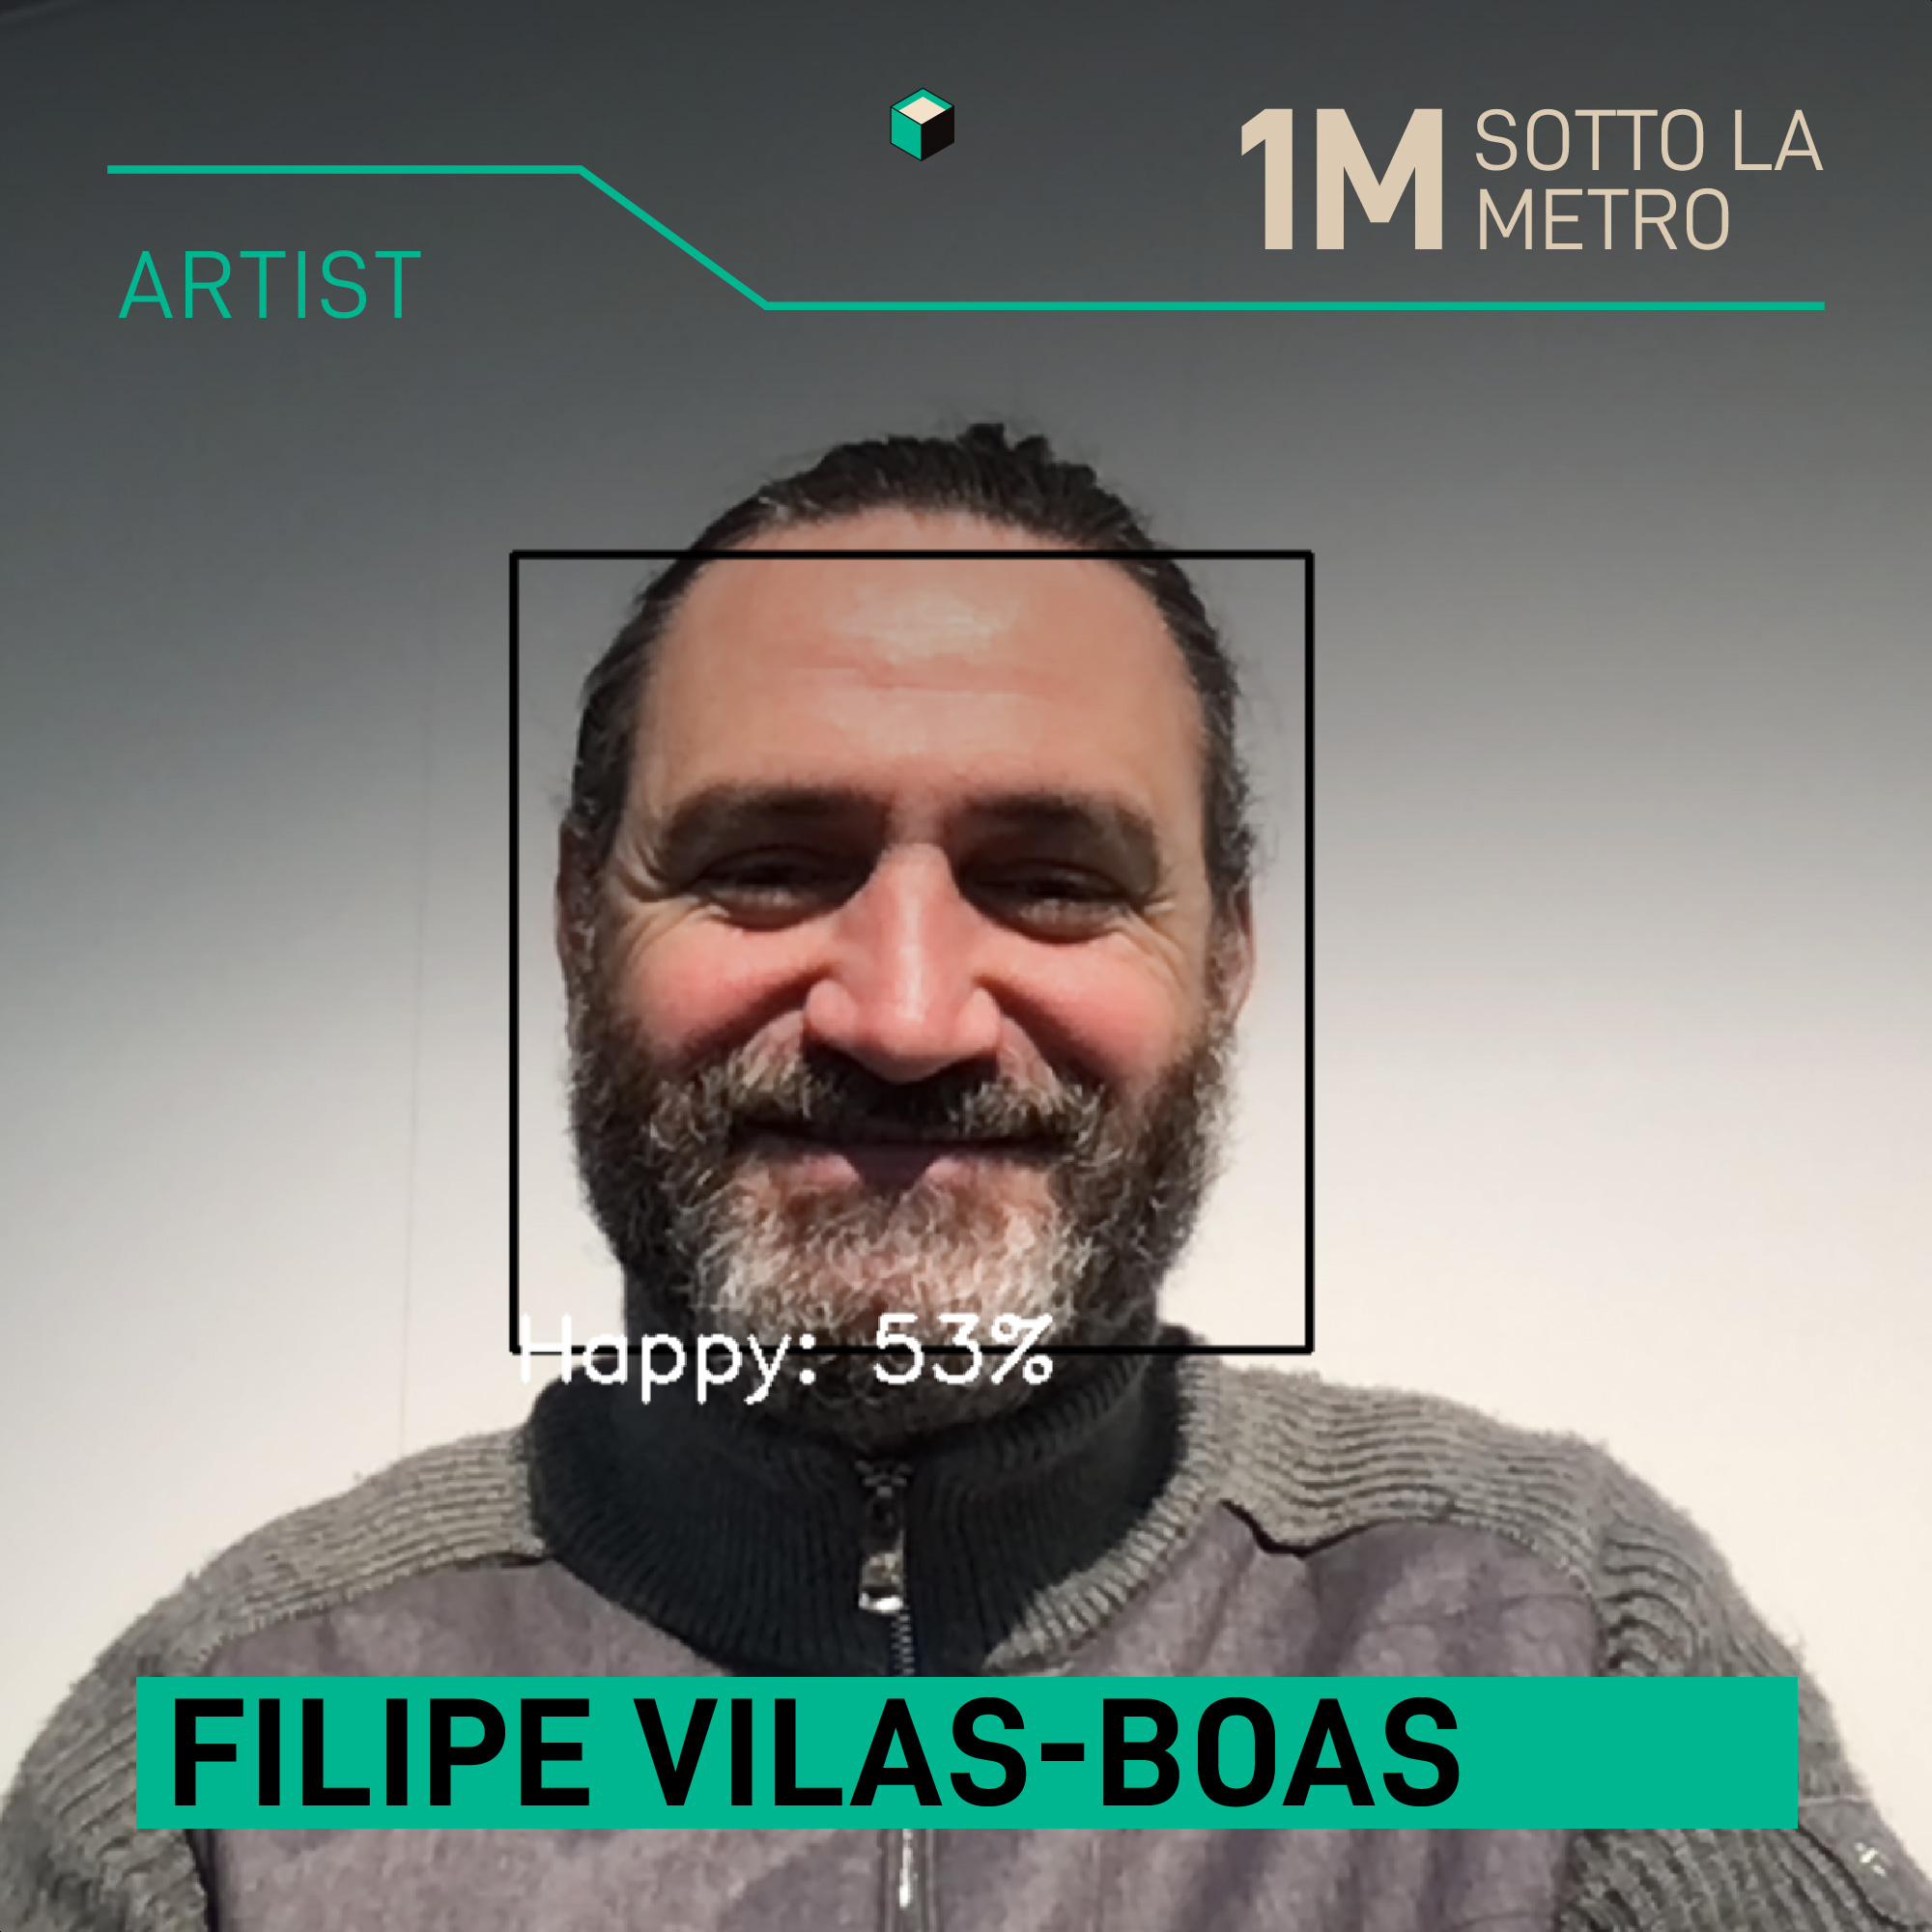 Filipe Vilas-Boas